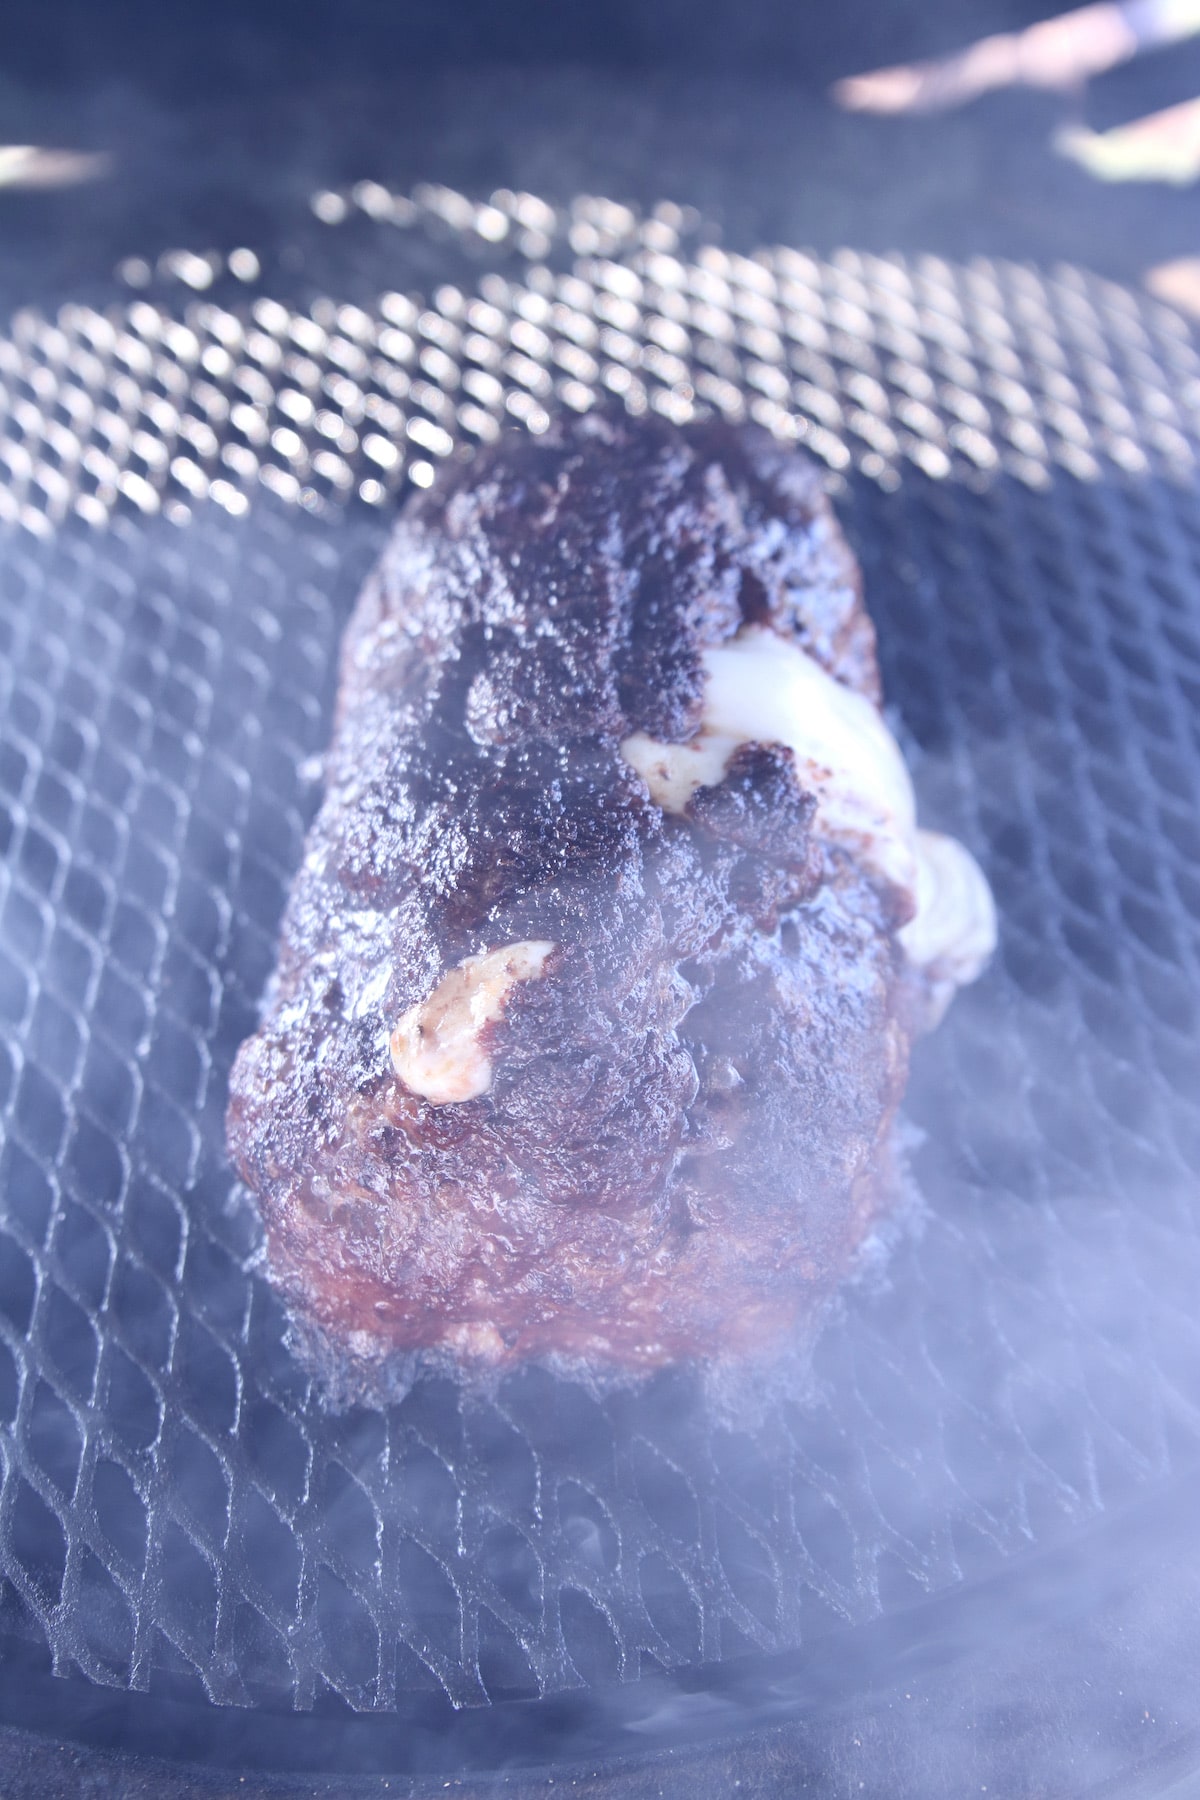 Grilling meatloaf.